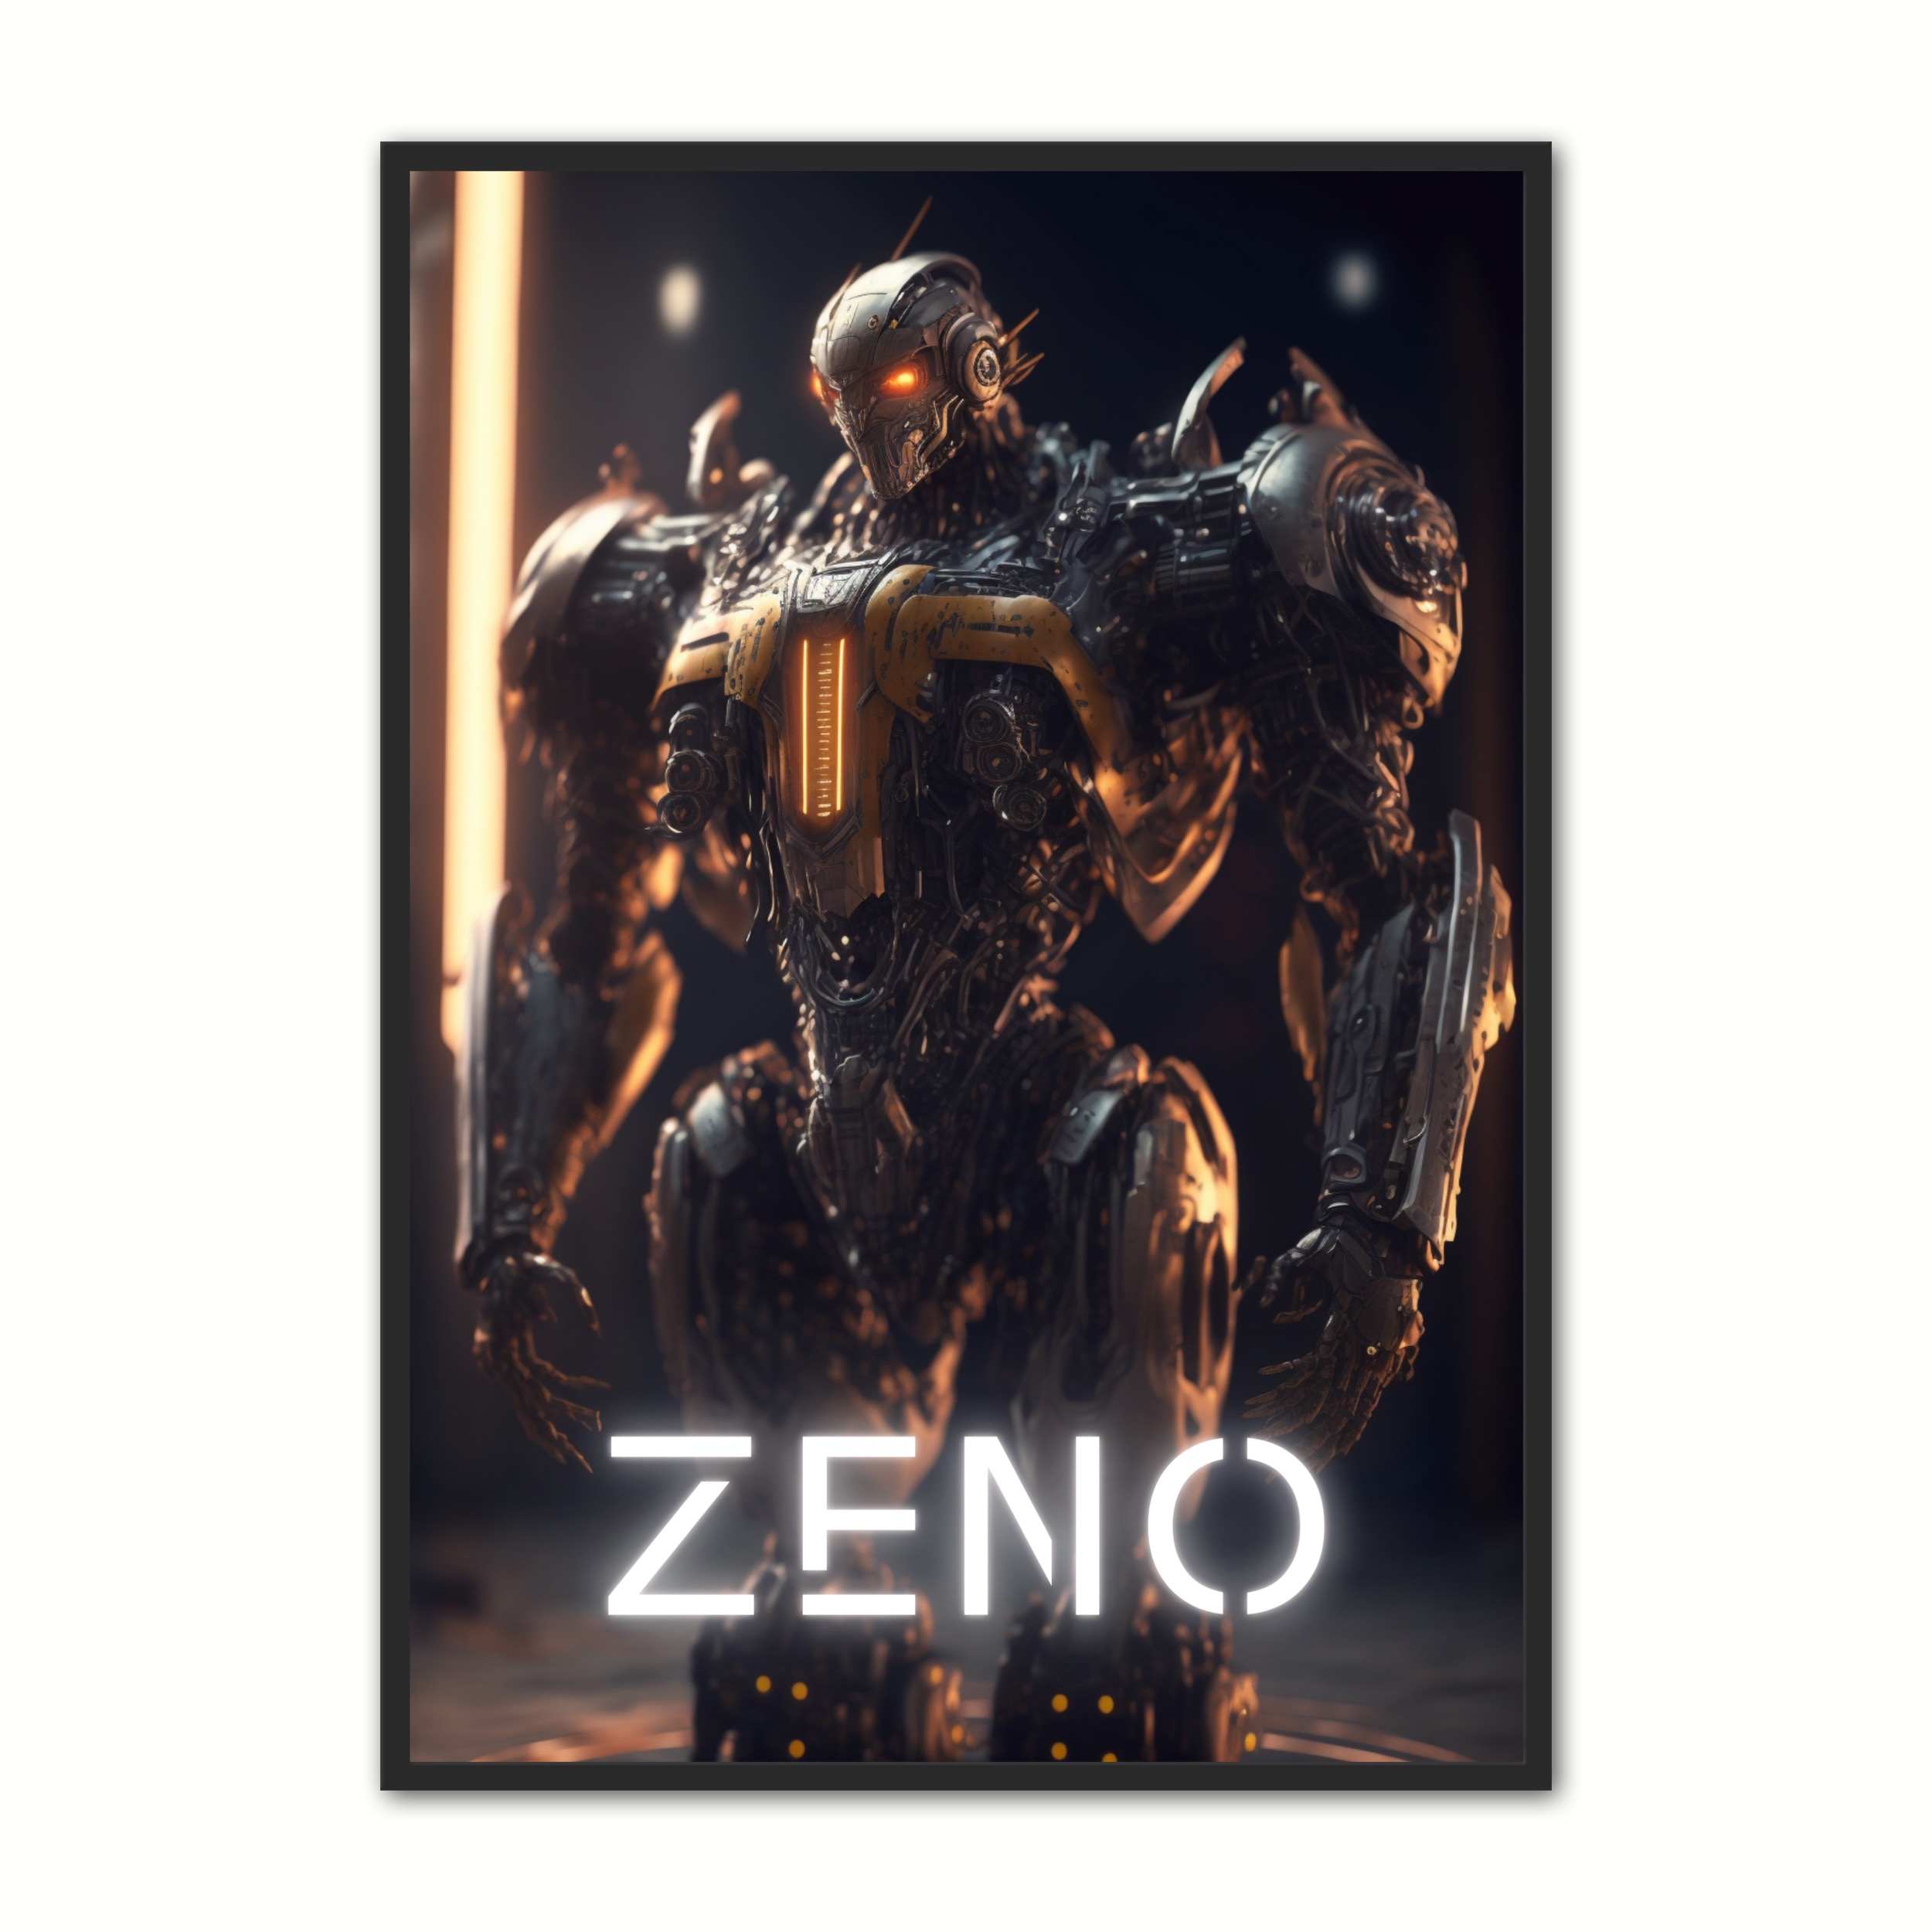 Se Plakat med Zeno - Android 50 x 70 cm (B2) hos Nyplakat.dk